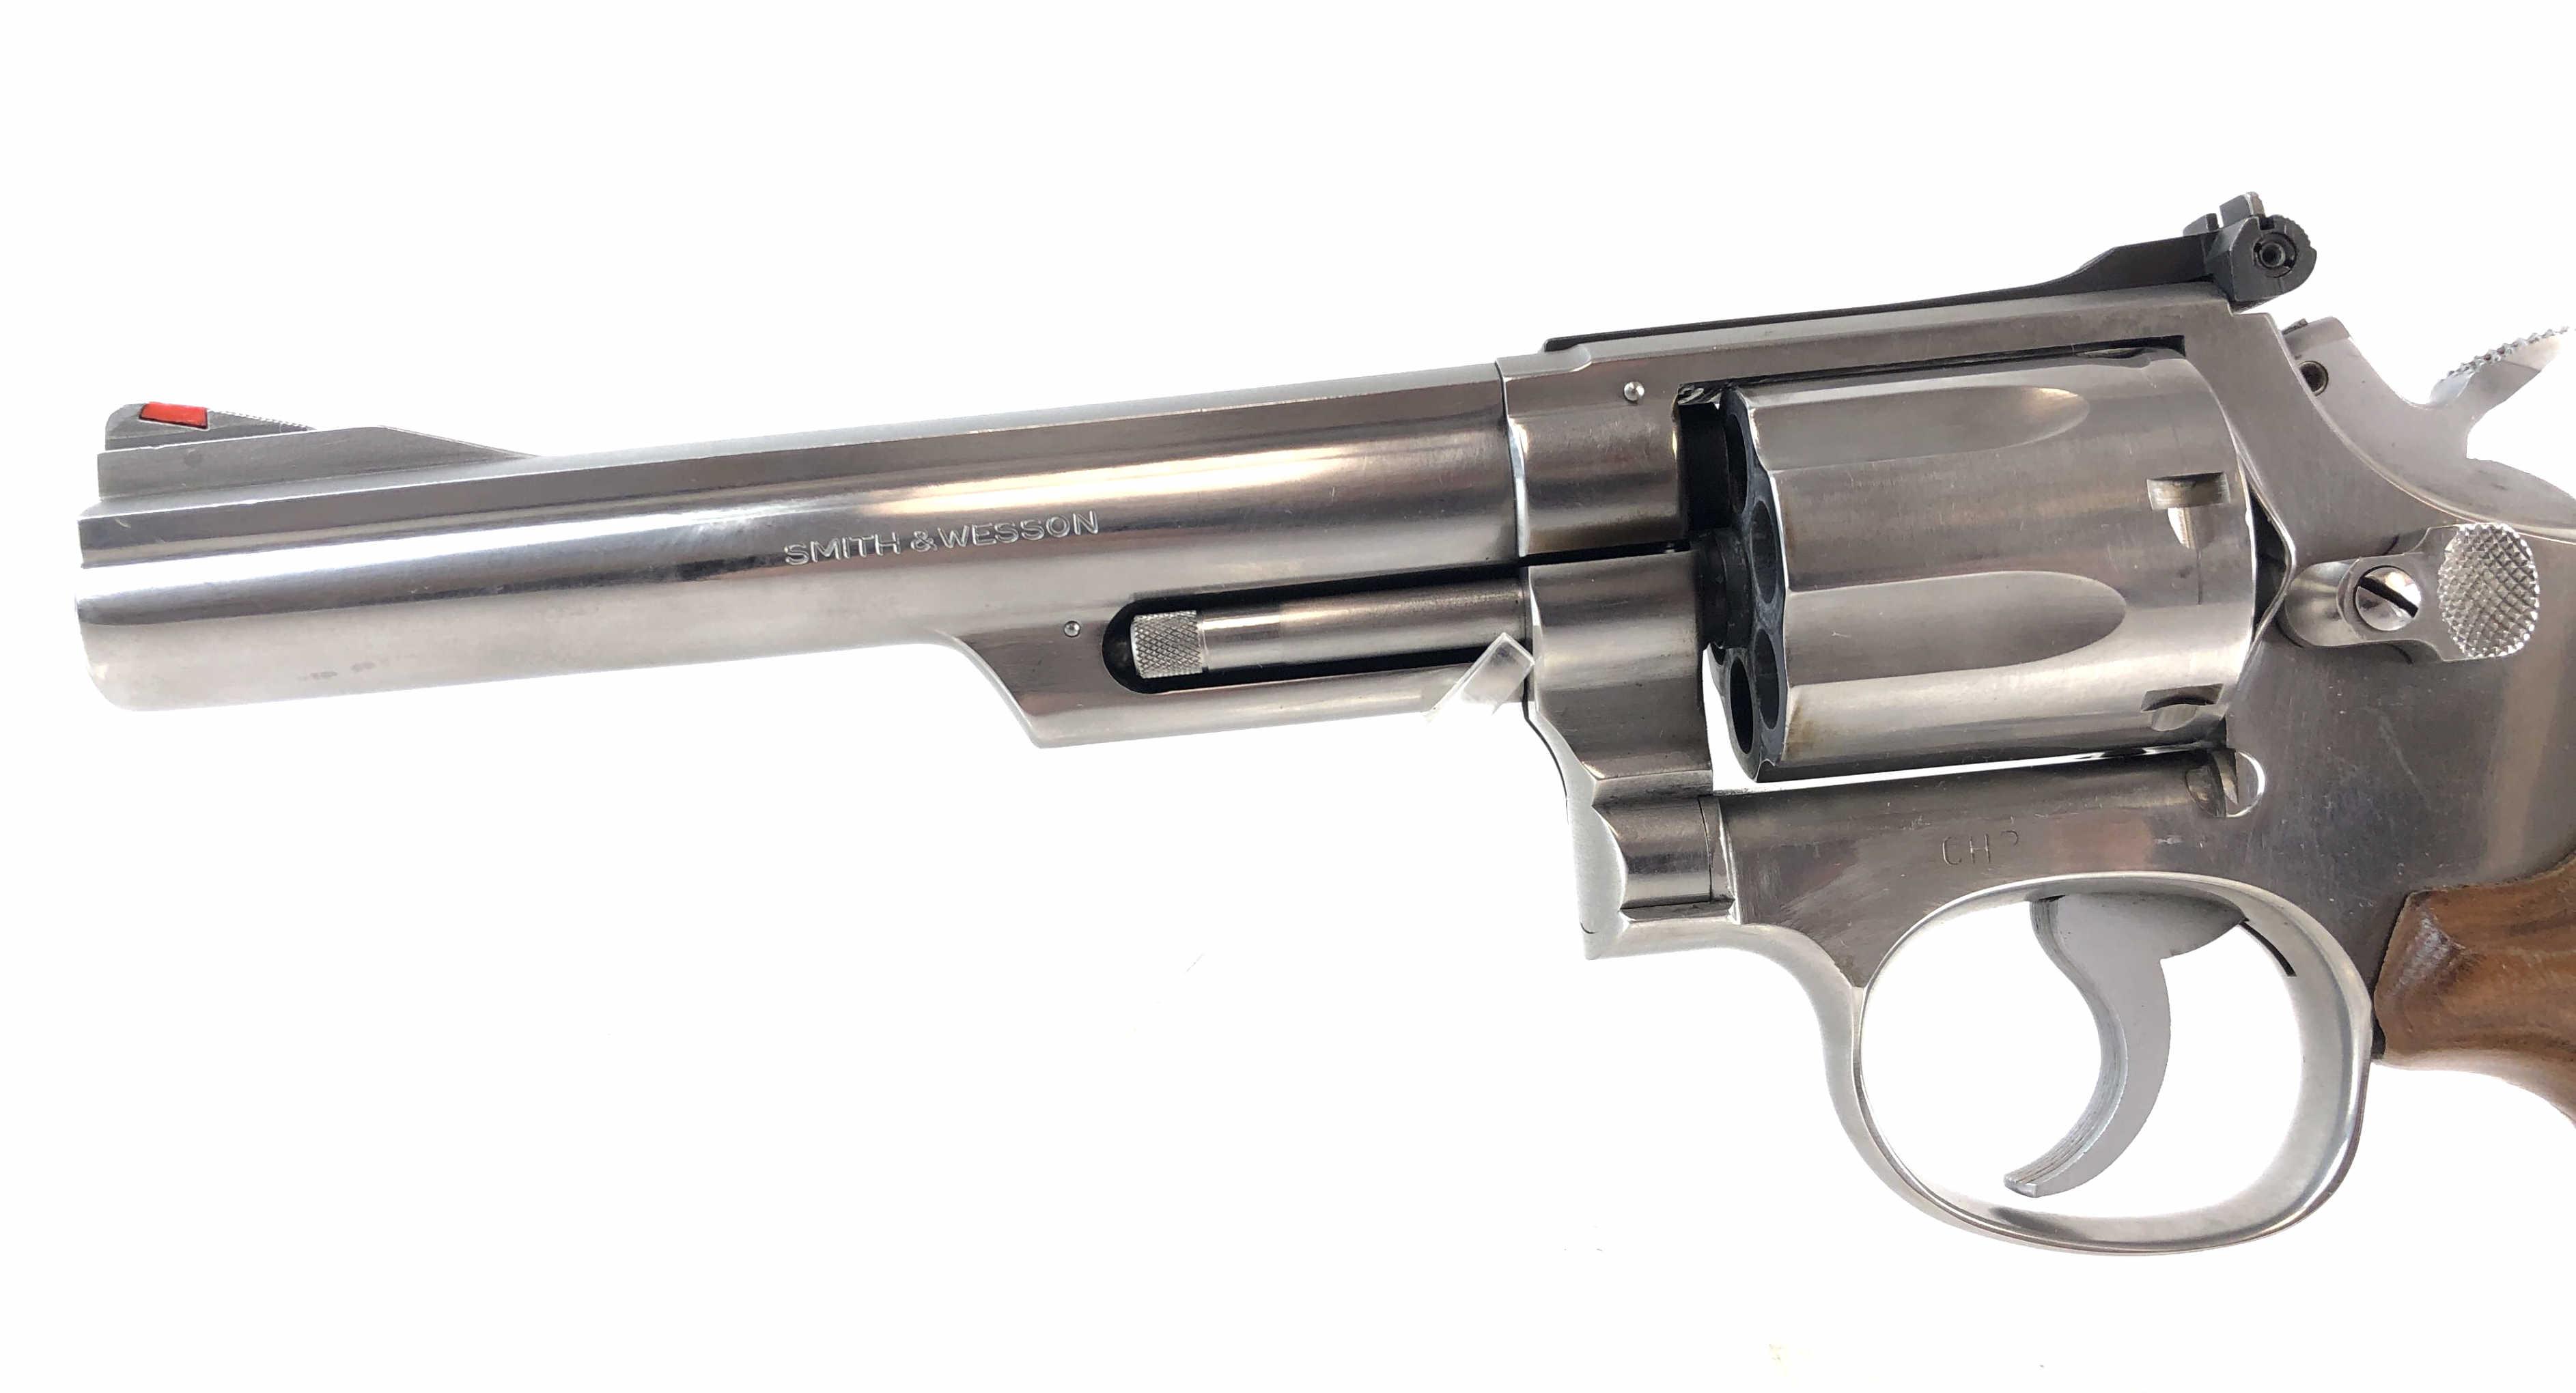 Smith & Wesson .38 S&w Revolver